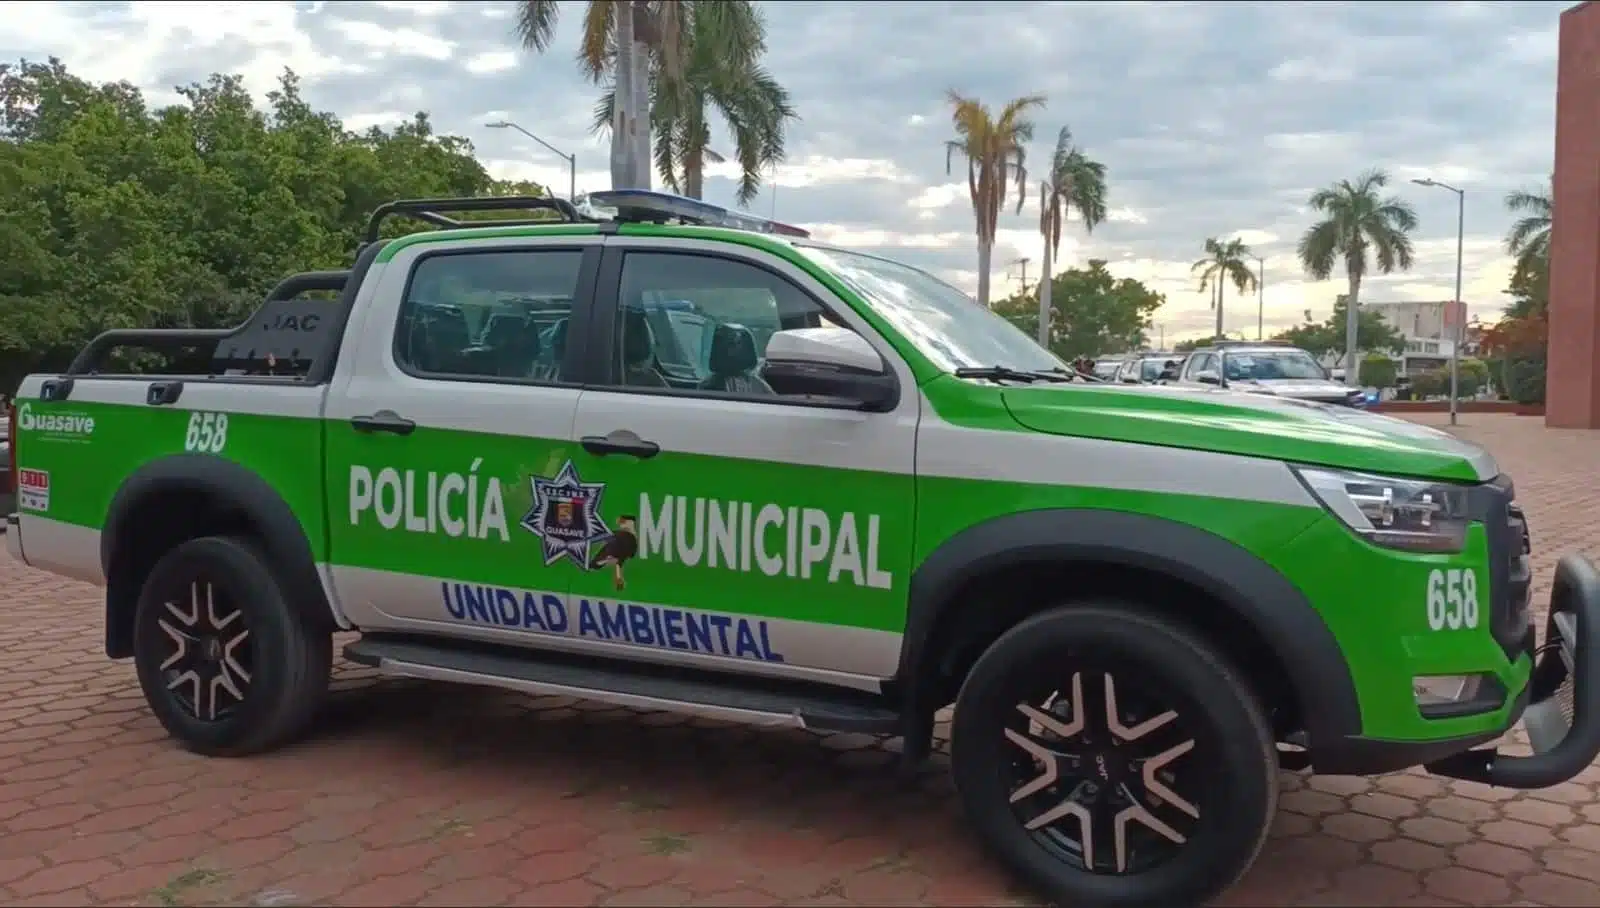 Policía municipal de Guasave, unidad ambiental